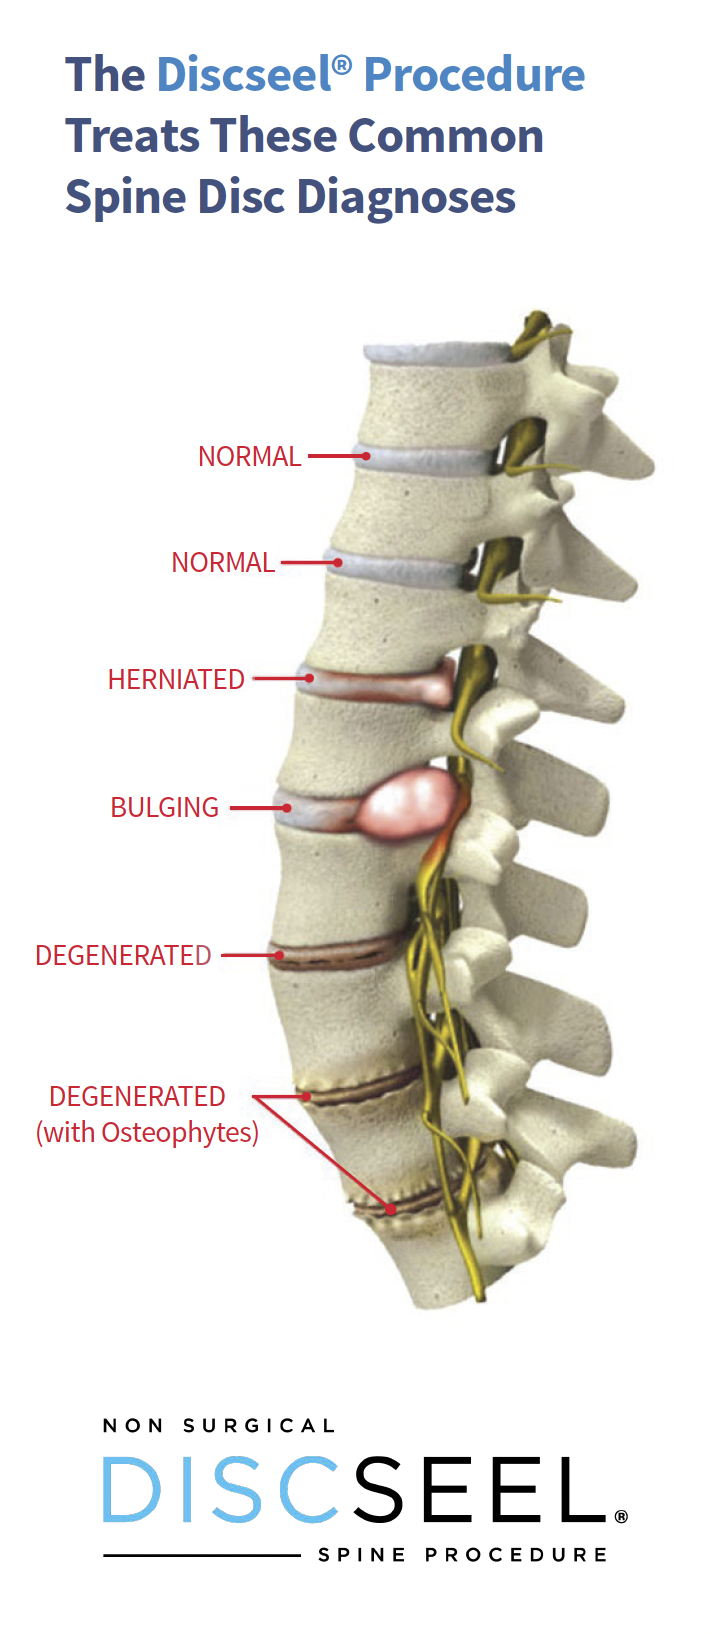 discseel procedure for spine